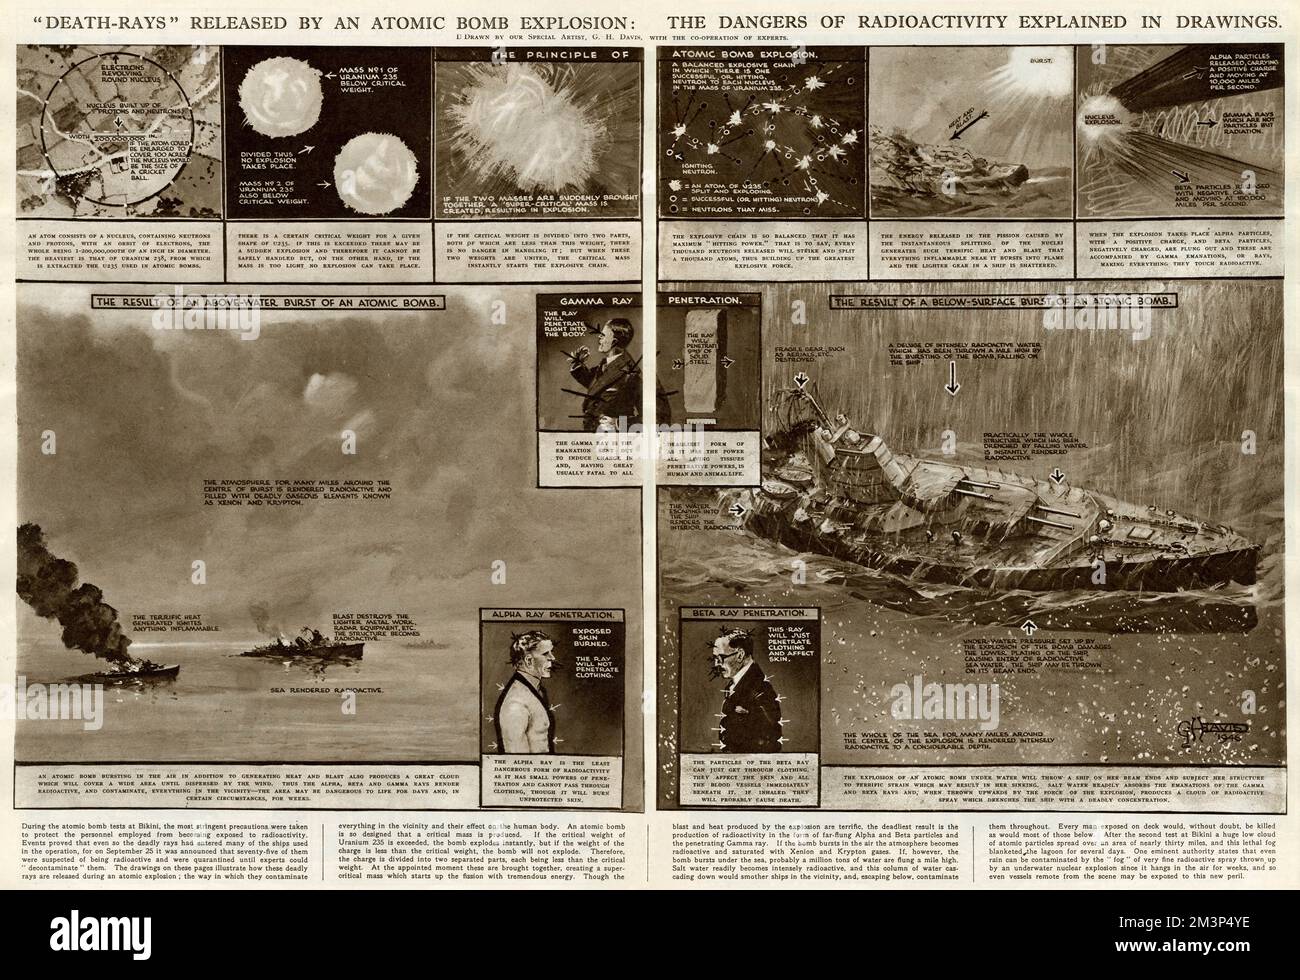 Todesstrahlen, die durch eine Atombombenexplosion freigesetzt werden: Die Gefahren der Radioaktivität werden in Zeichnungen erläutert. Datum: 1946 Stockfoto